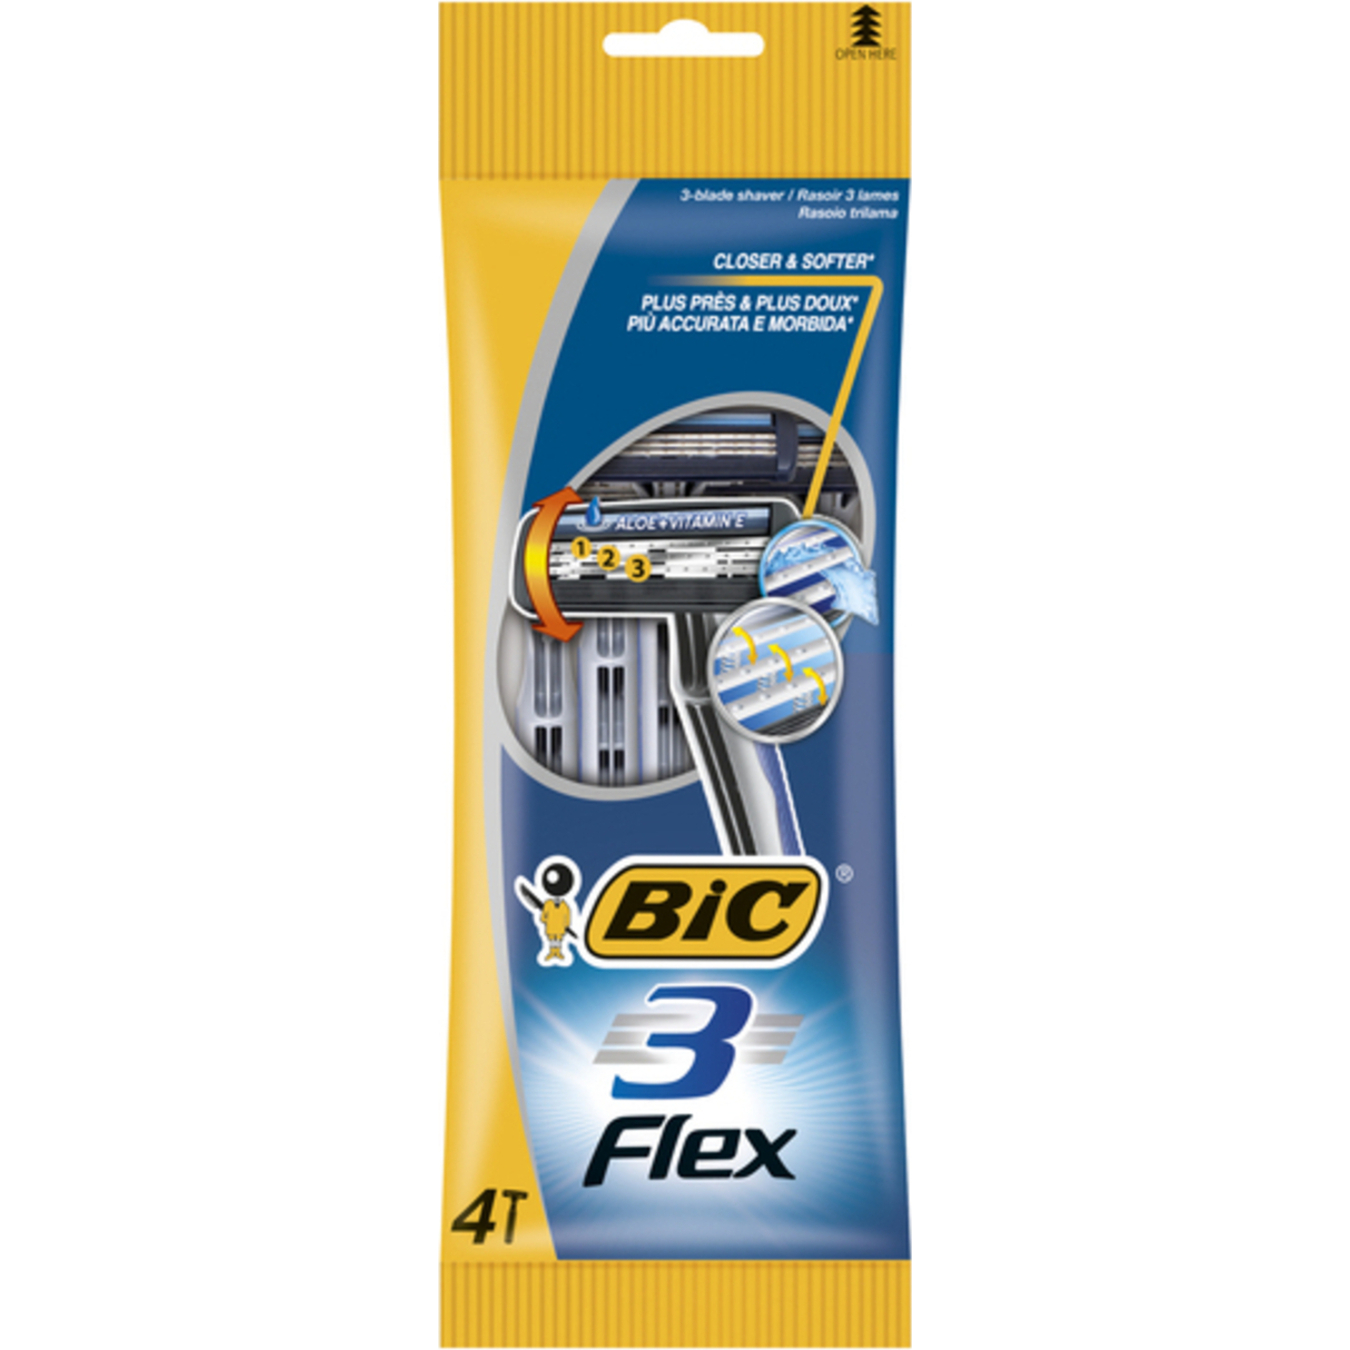 BIC Flex 3 for shaving razor 4pcs